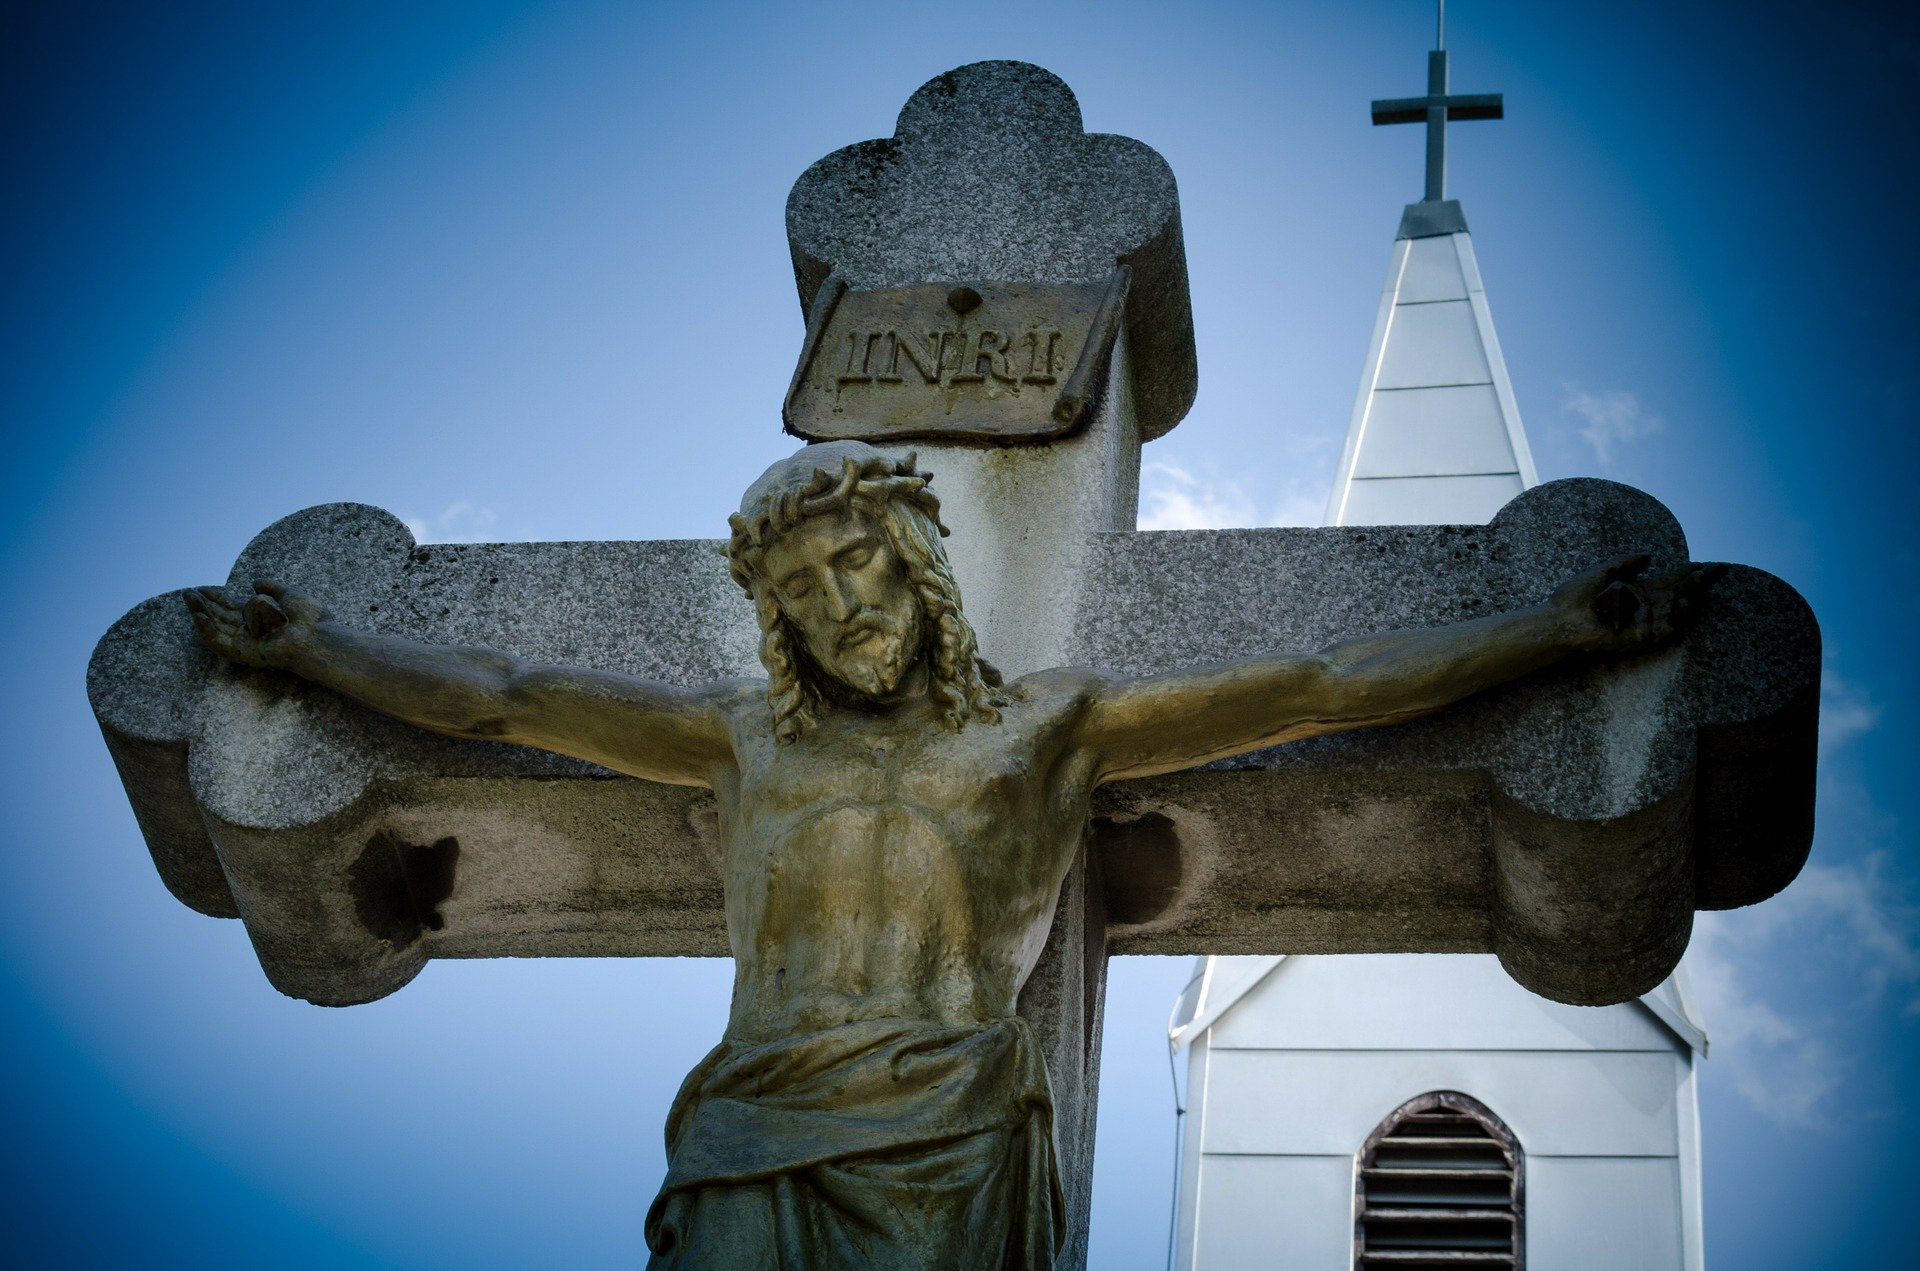 VENDREDI - Unir notre souffrance à la Souffrance de Jésus sur la croix